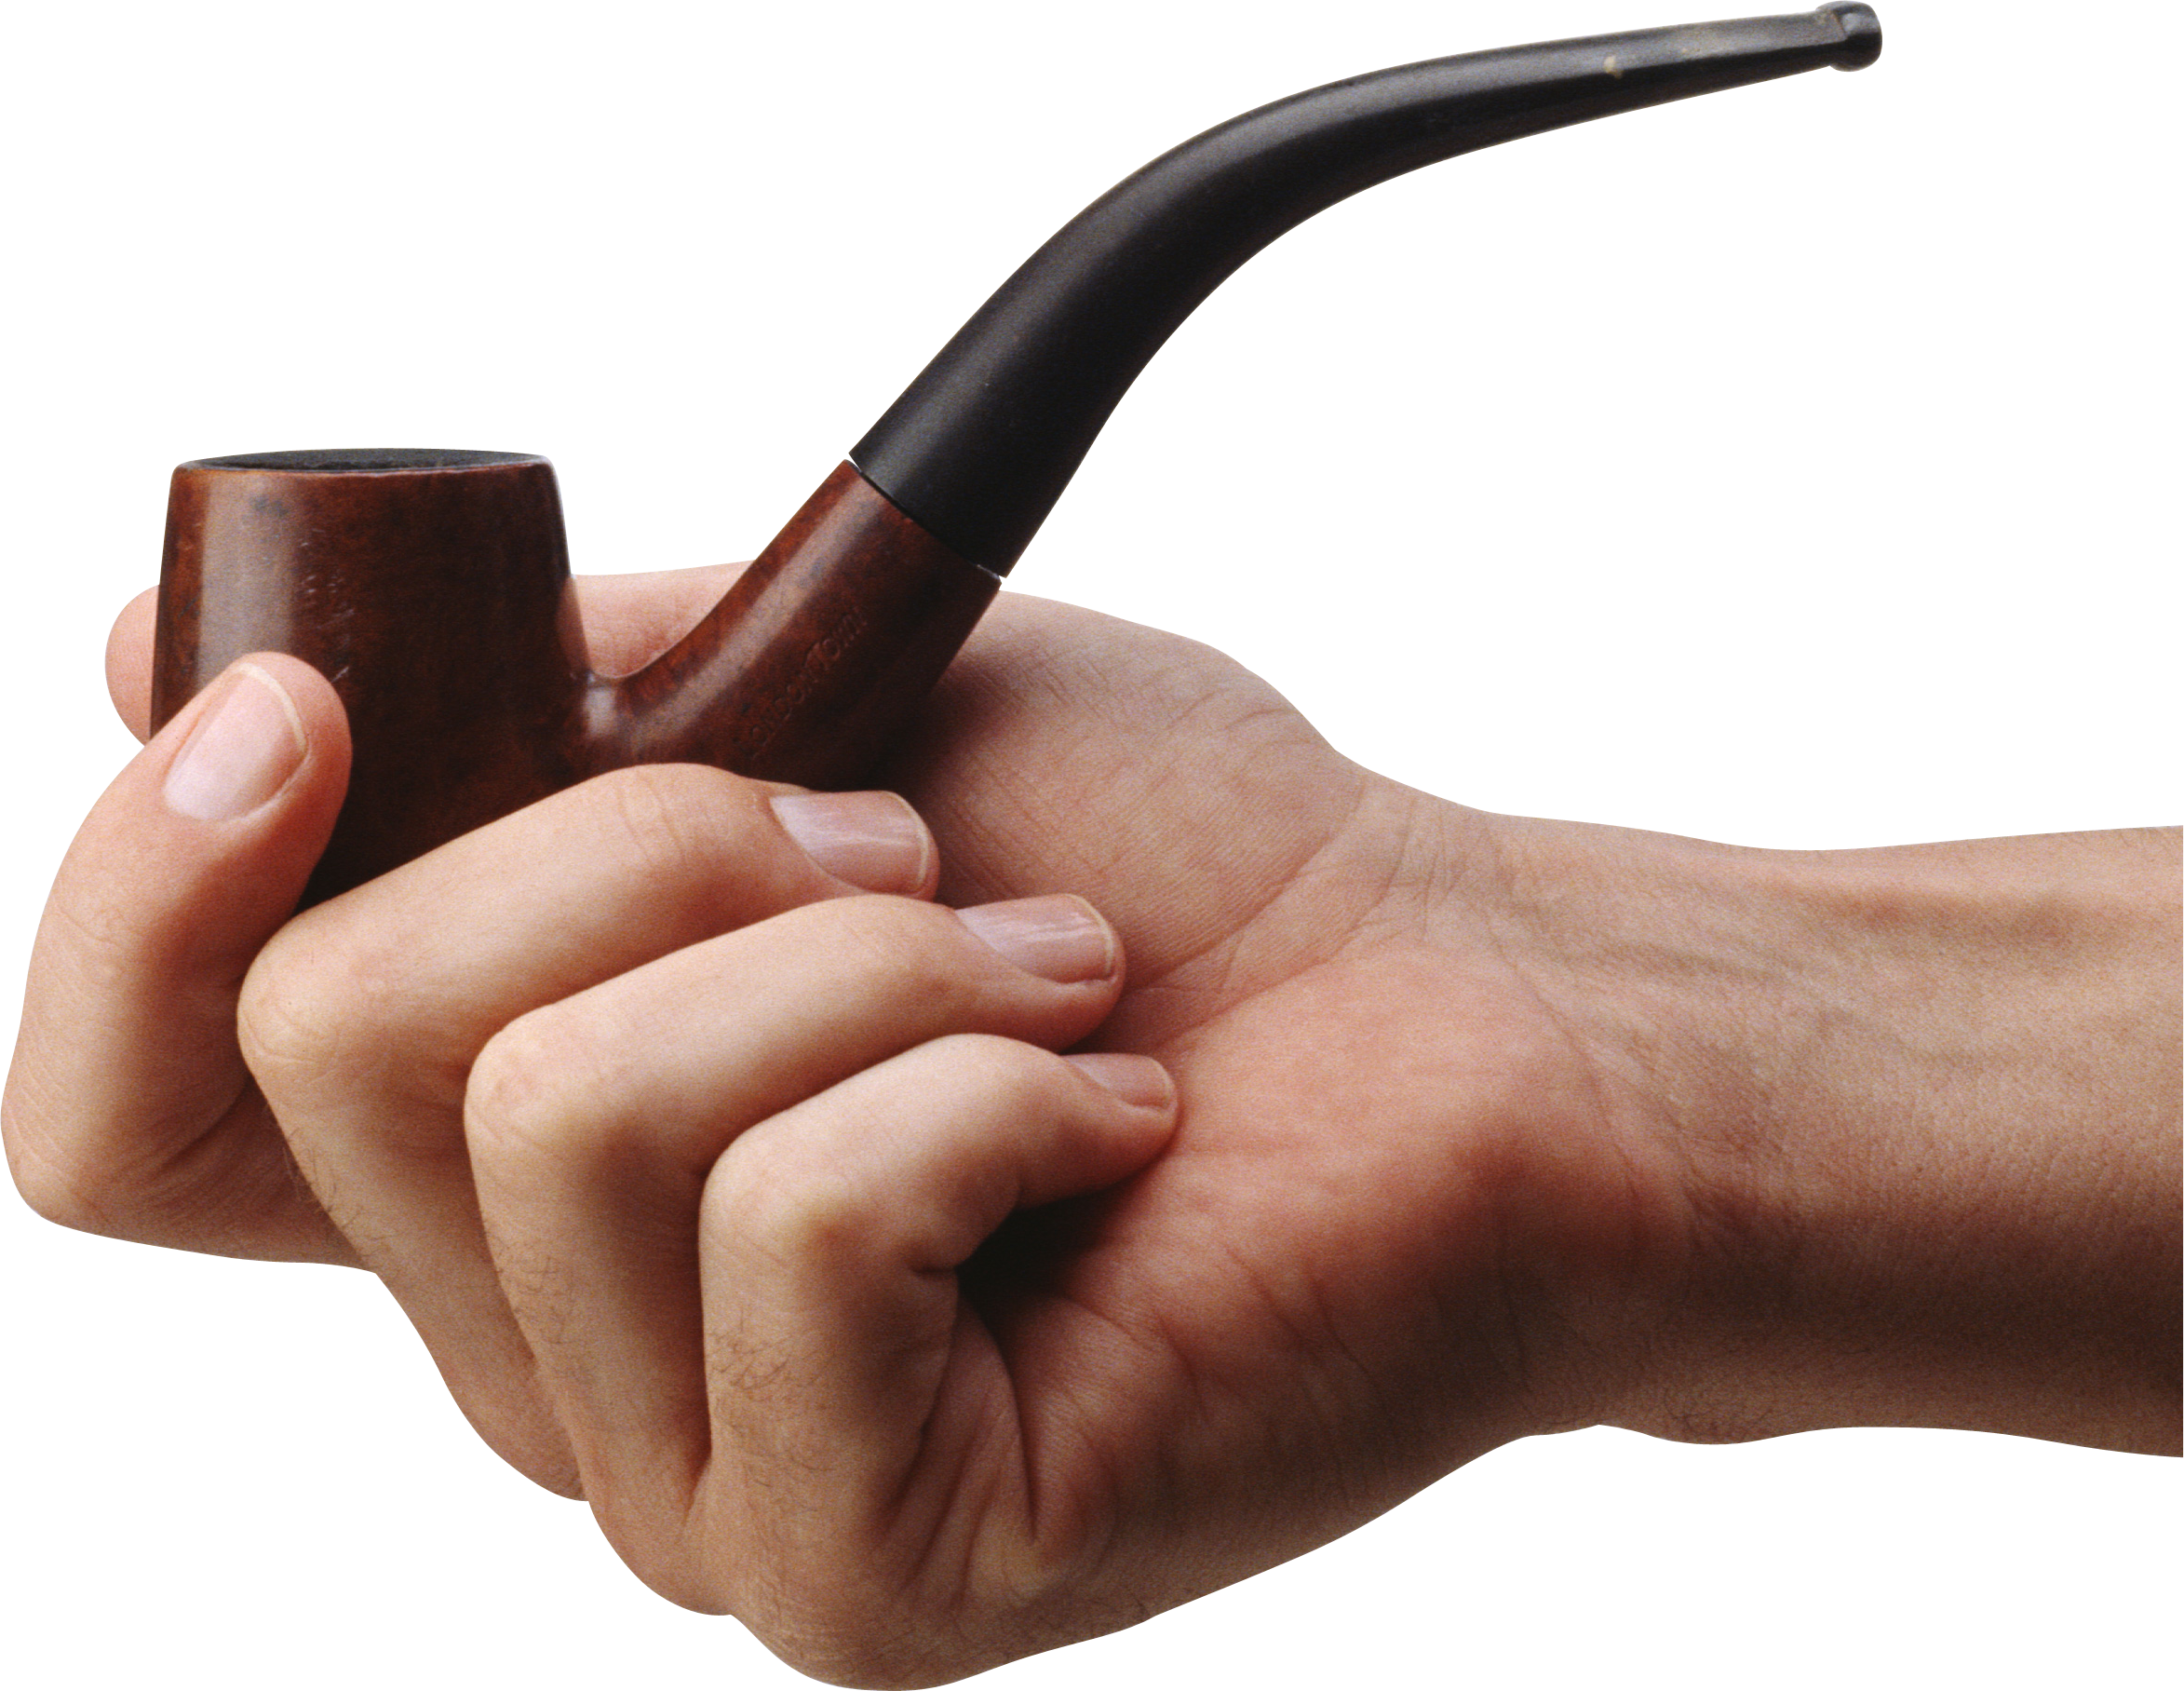 Курительная трубка в руке PNG фото